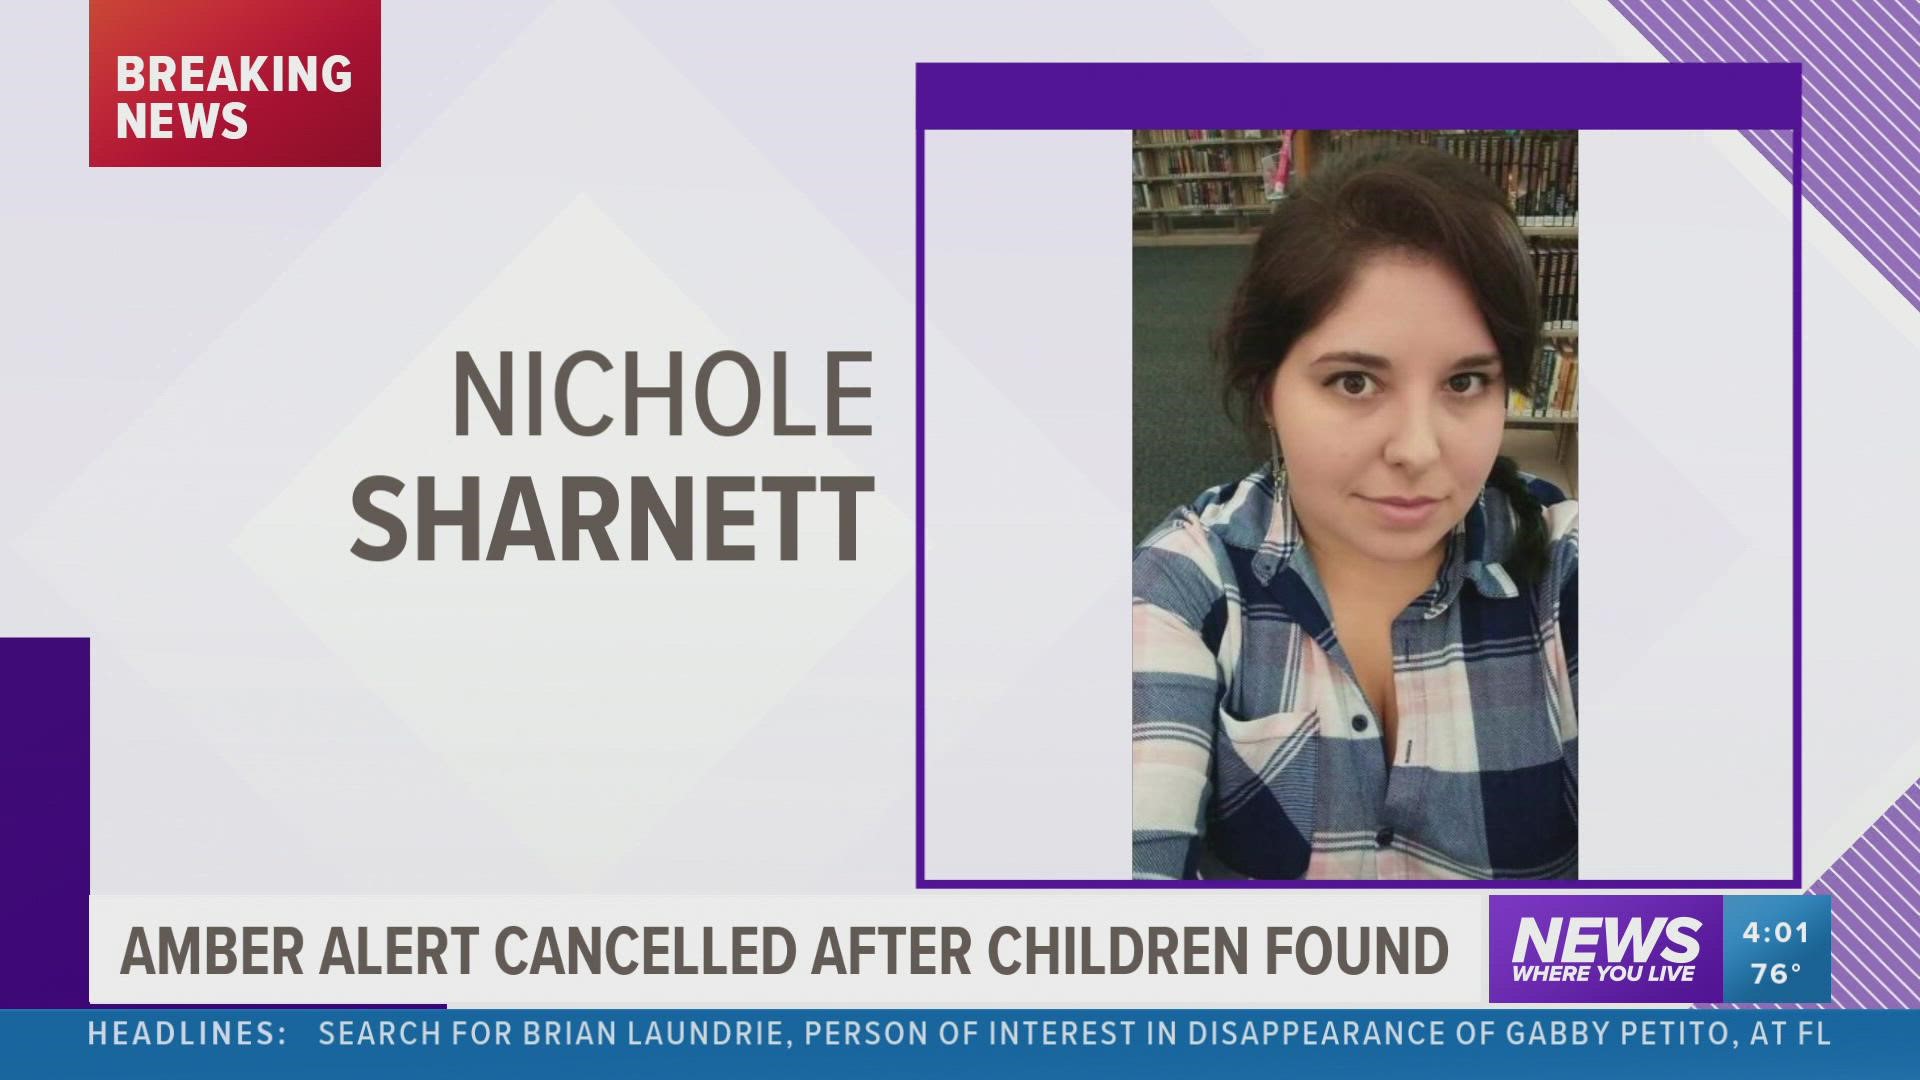 An Arkansas Amber Alert has been canceled after the children were found.